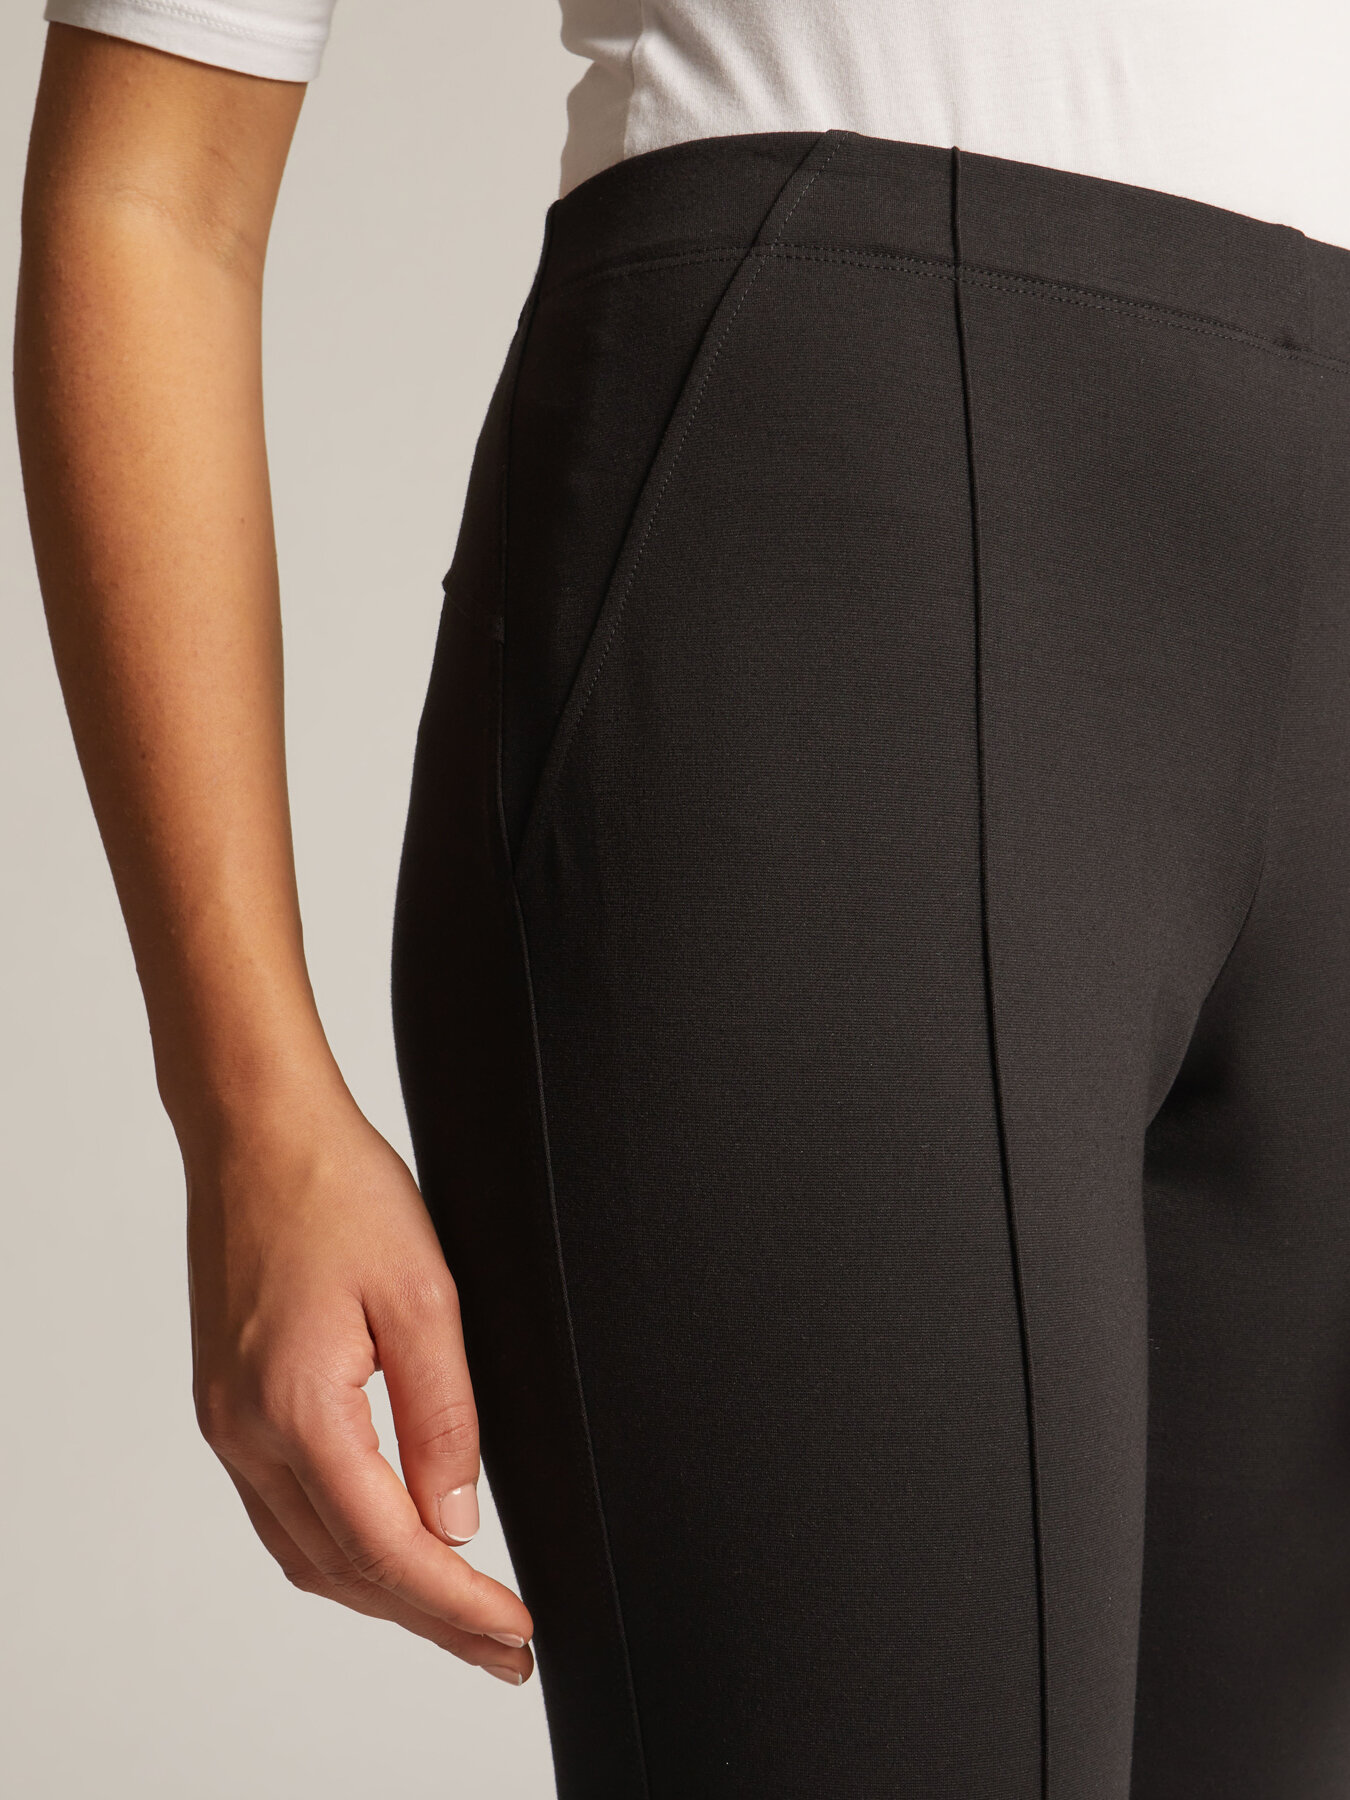 leggings femme en maille milano avec fausses poches zippees noir